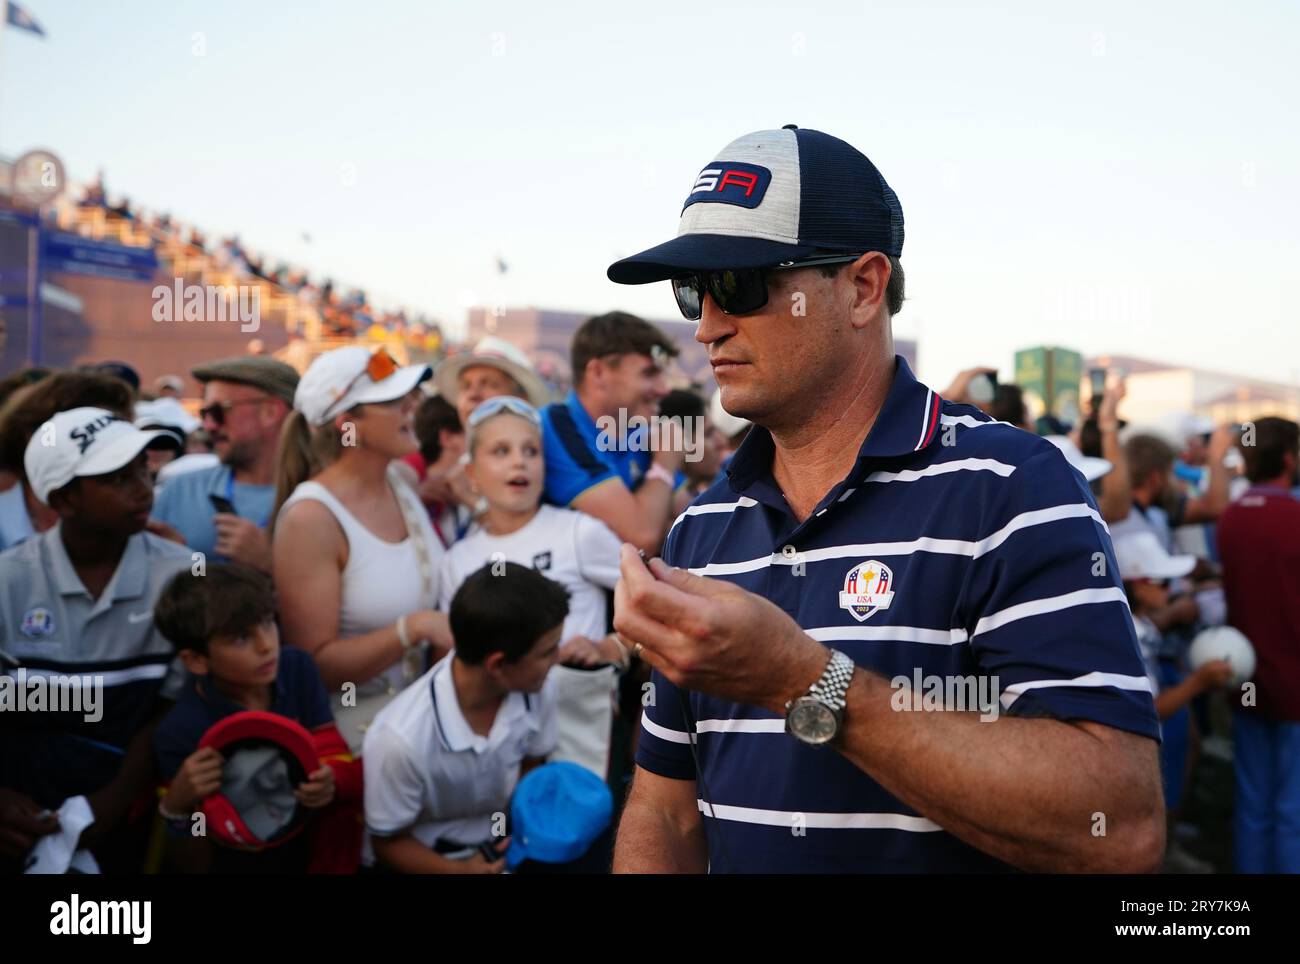 Il capitano degli Stati Uniti Zach Johnson segue le fourballs nel primo giorno della 44a Ryder Cup al Marco Simone Golf and Country Club di Roma, Italia. Data immagine: Venerdì 29 settembre 2023. Foto Stock